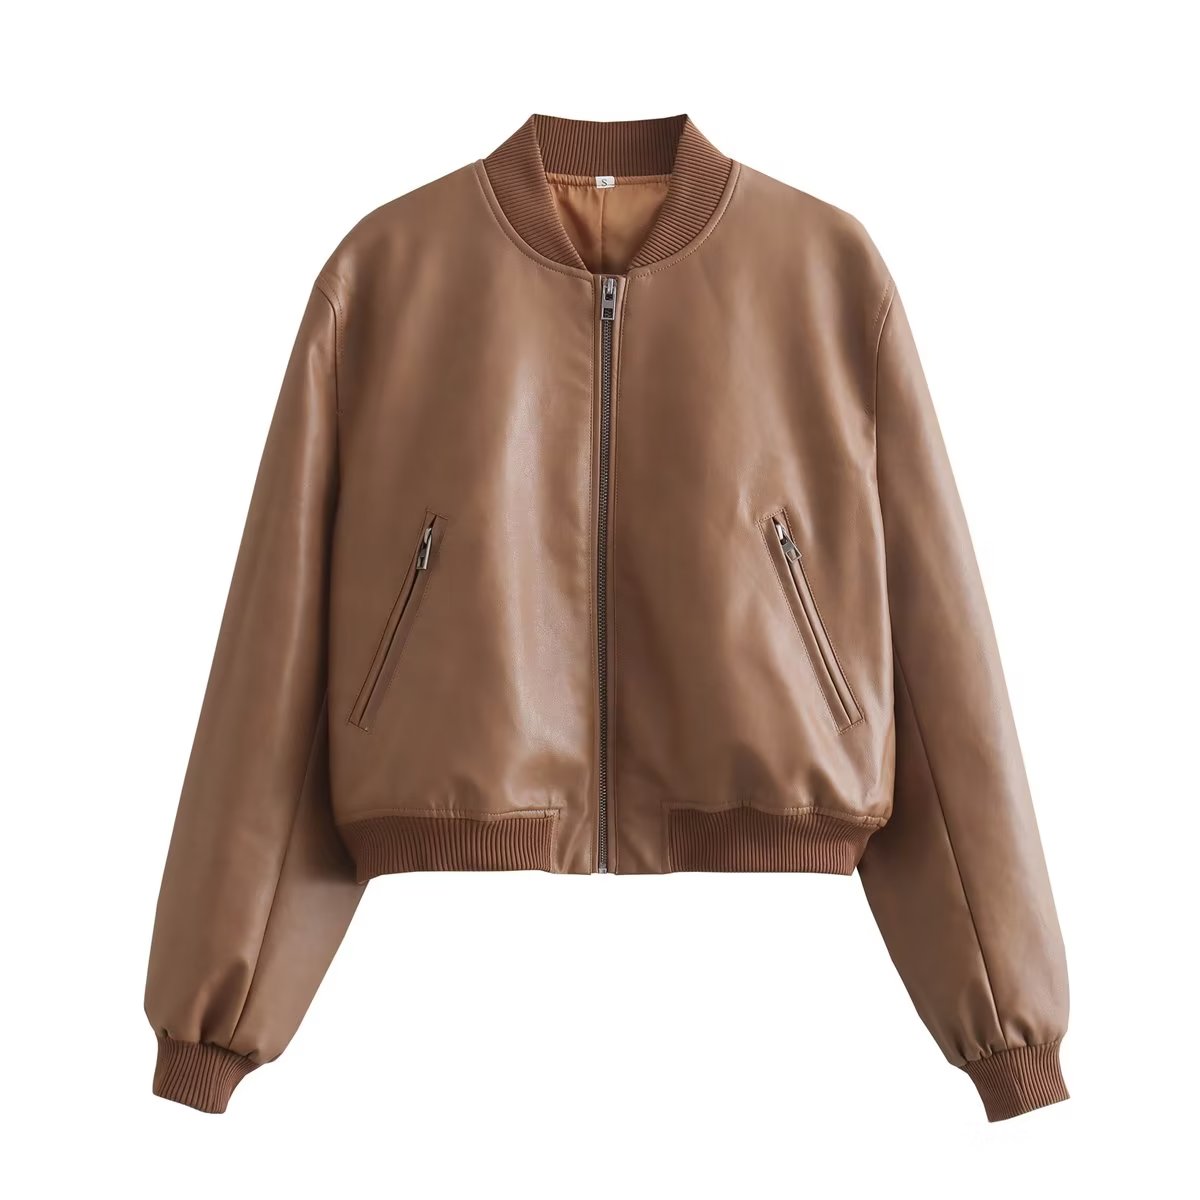 Fall Women Clothing Faux Leather Bomber Jacket Coat